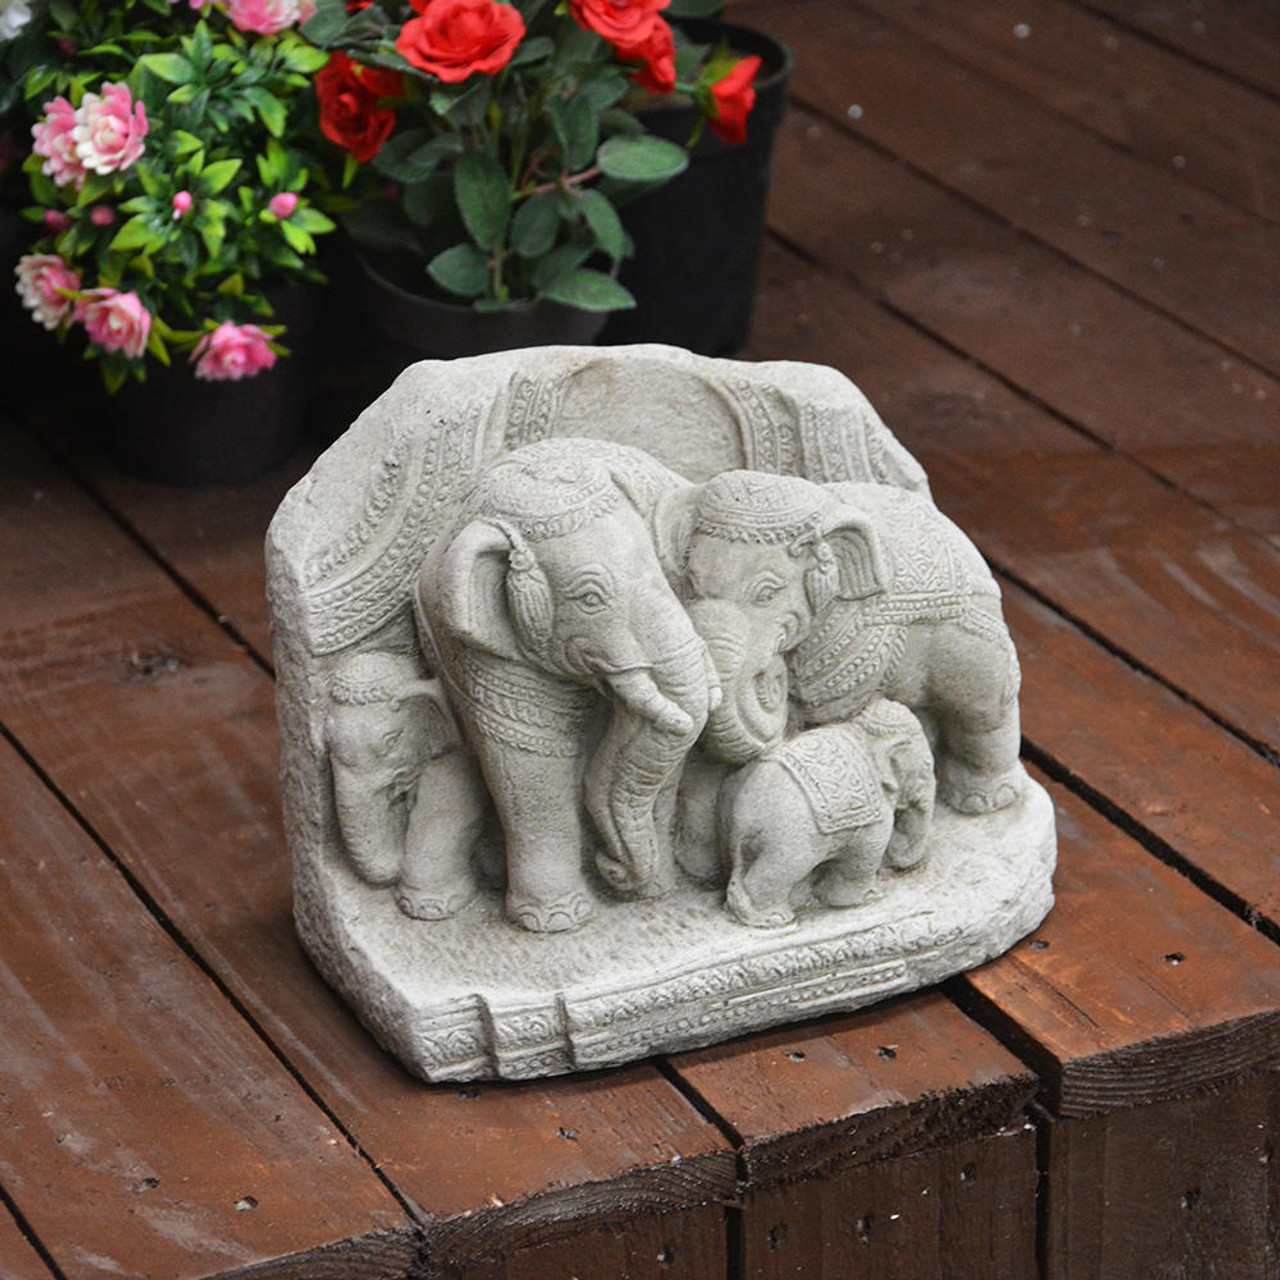 Stunning Elephant Family Garden Ornament